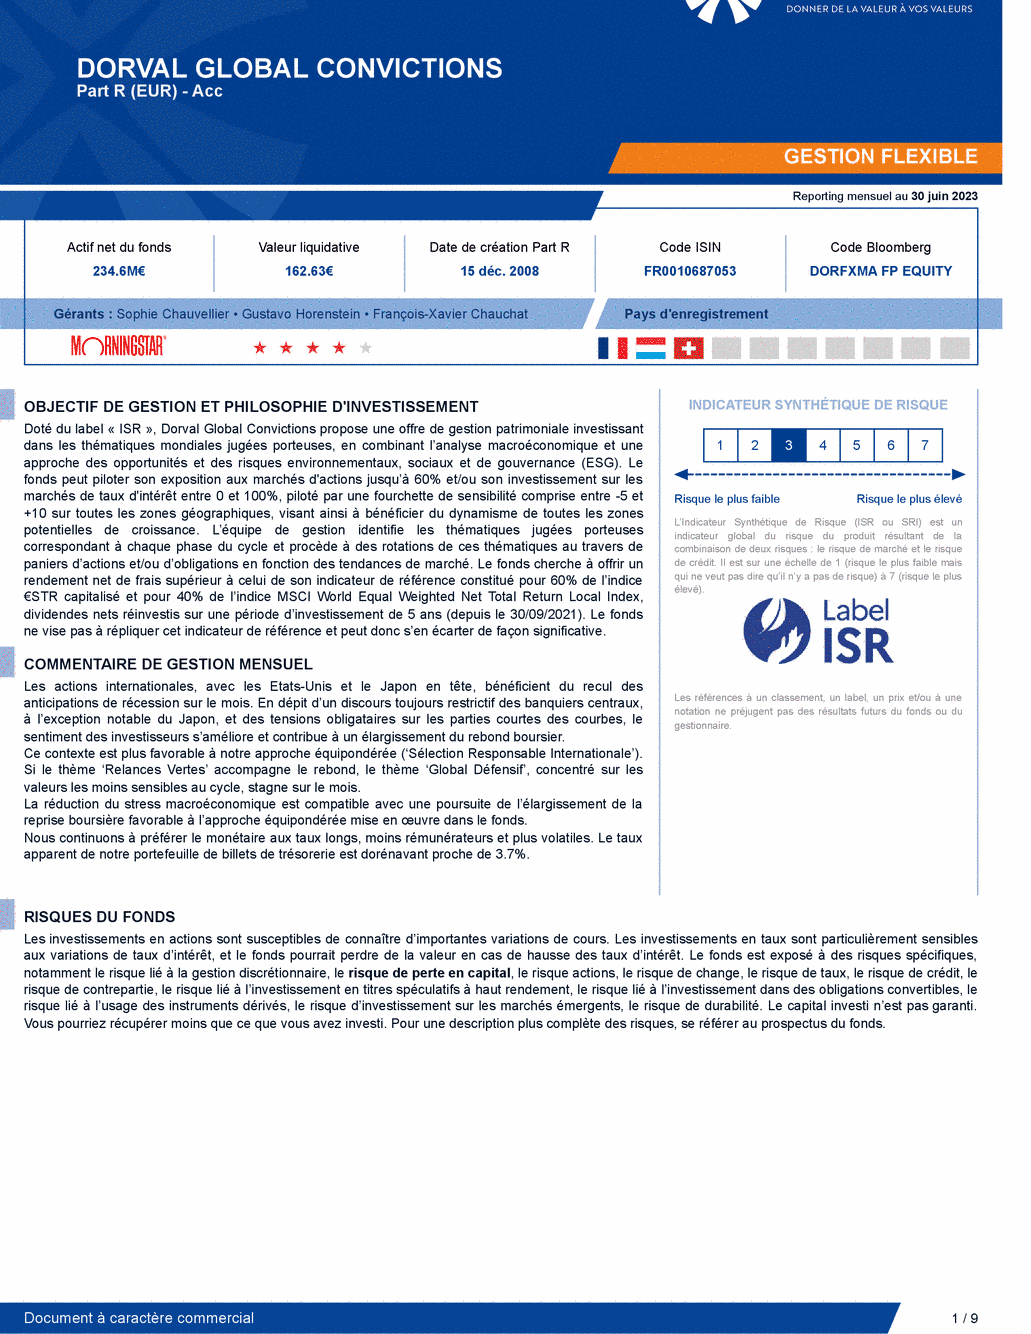 Reporting DORVAL GLOBAL CONVICTIONS A - 30/06/2023 - Français